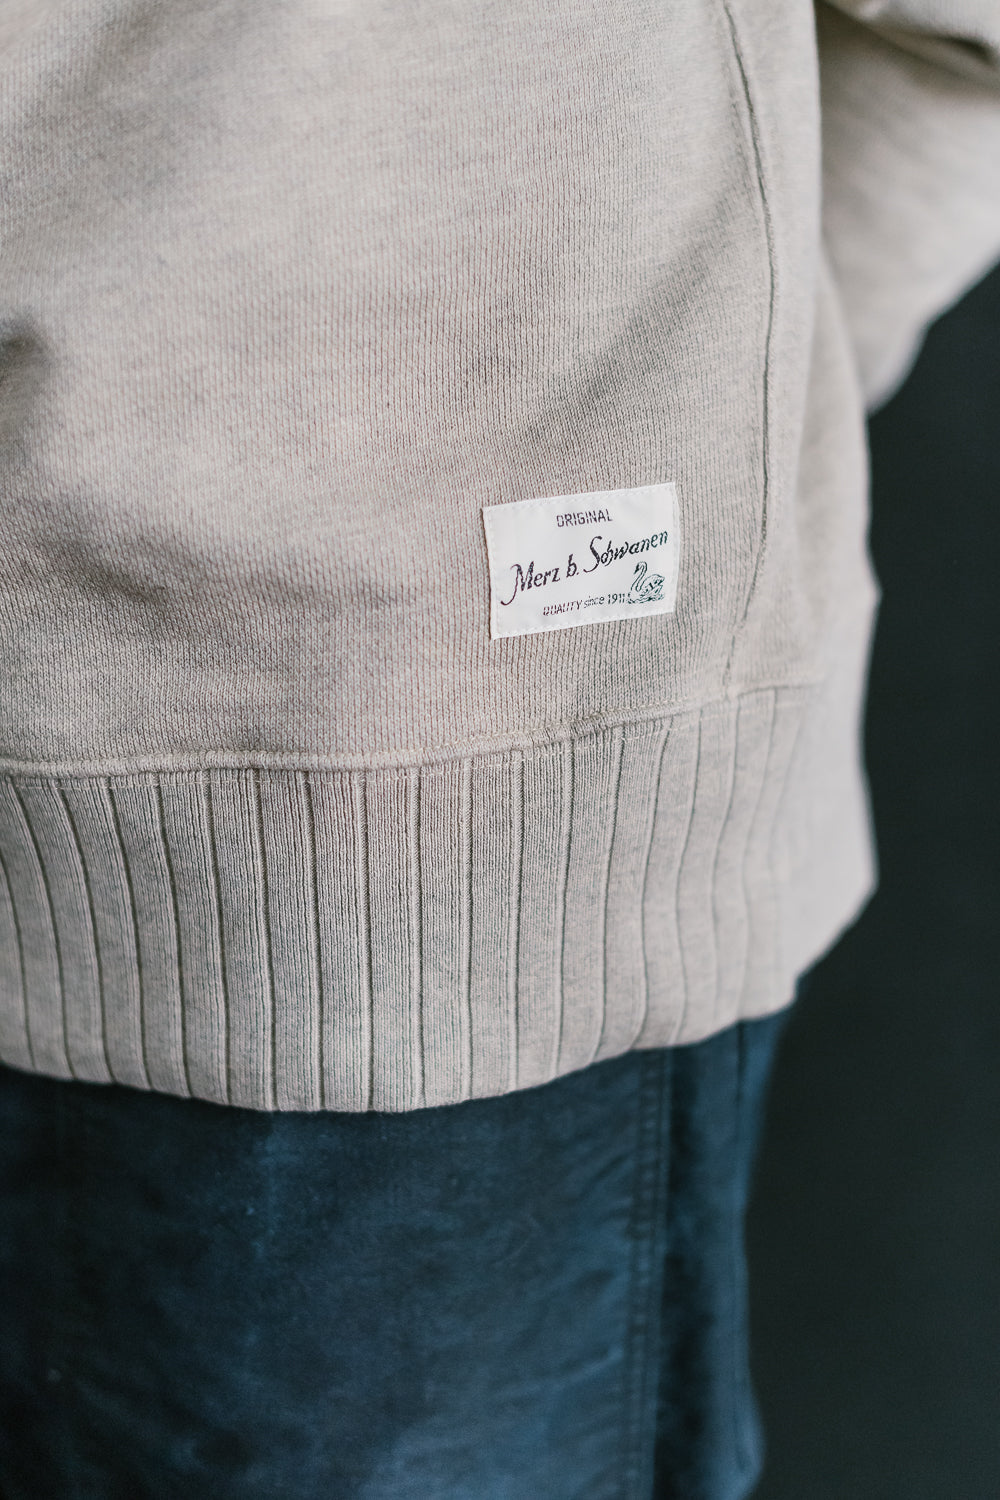 RFC01.80V - 19oz Vintaged Sweatshirt Relaxed Fit - Grey Melange